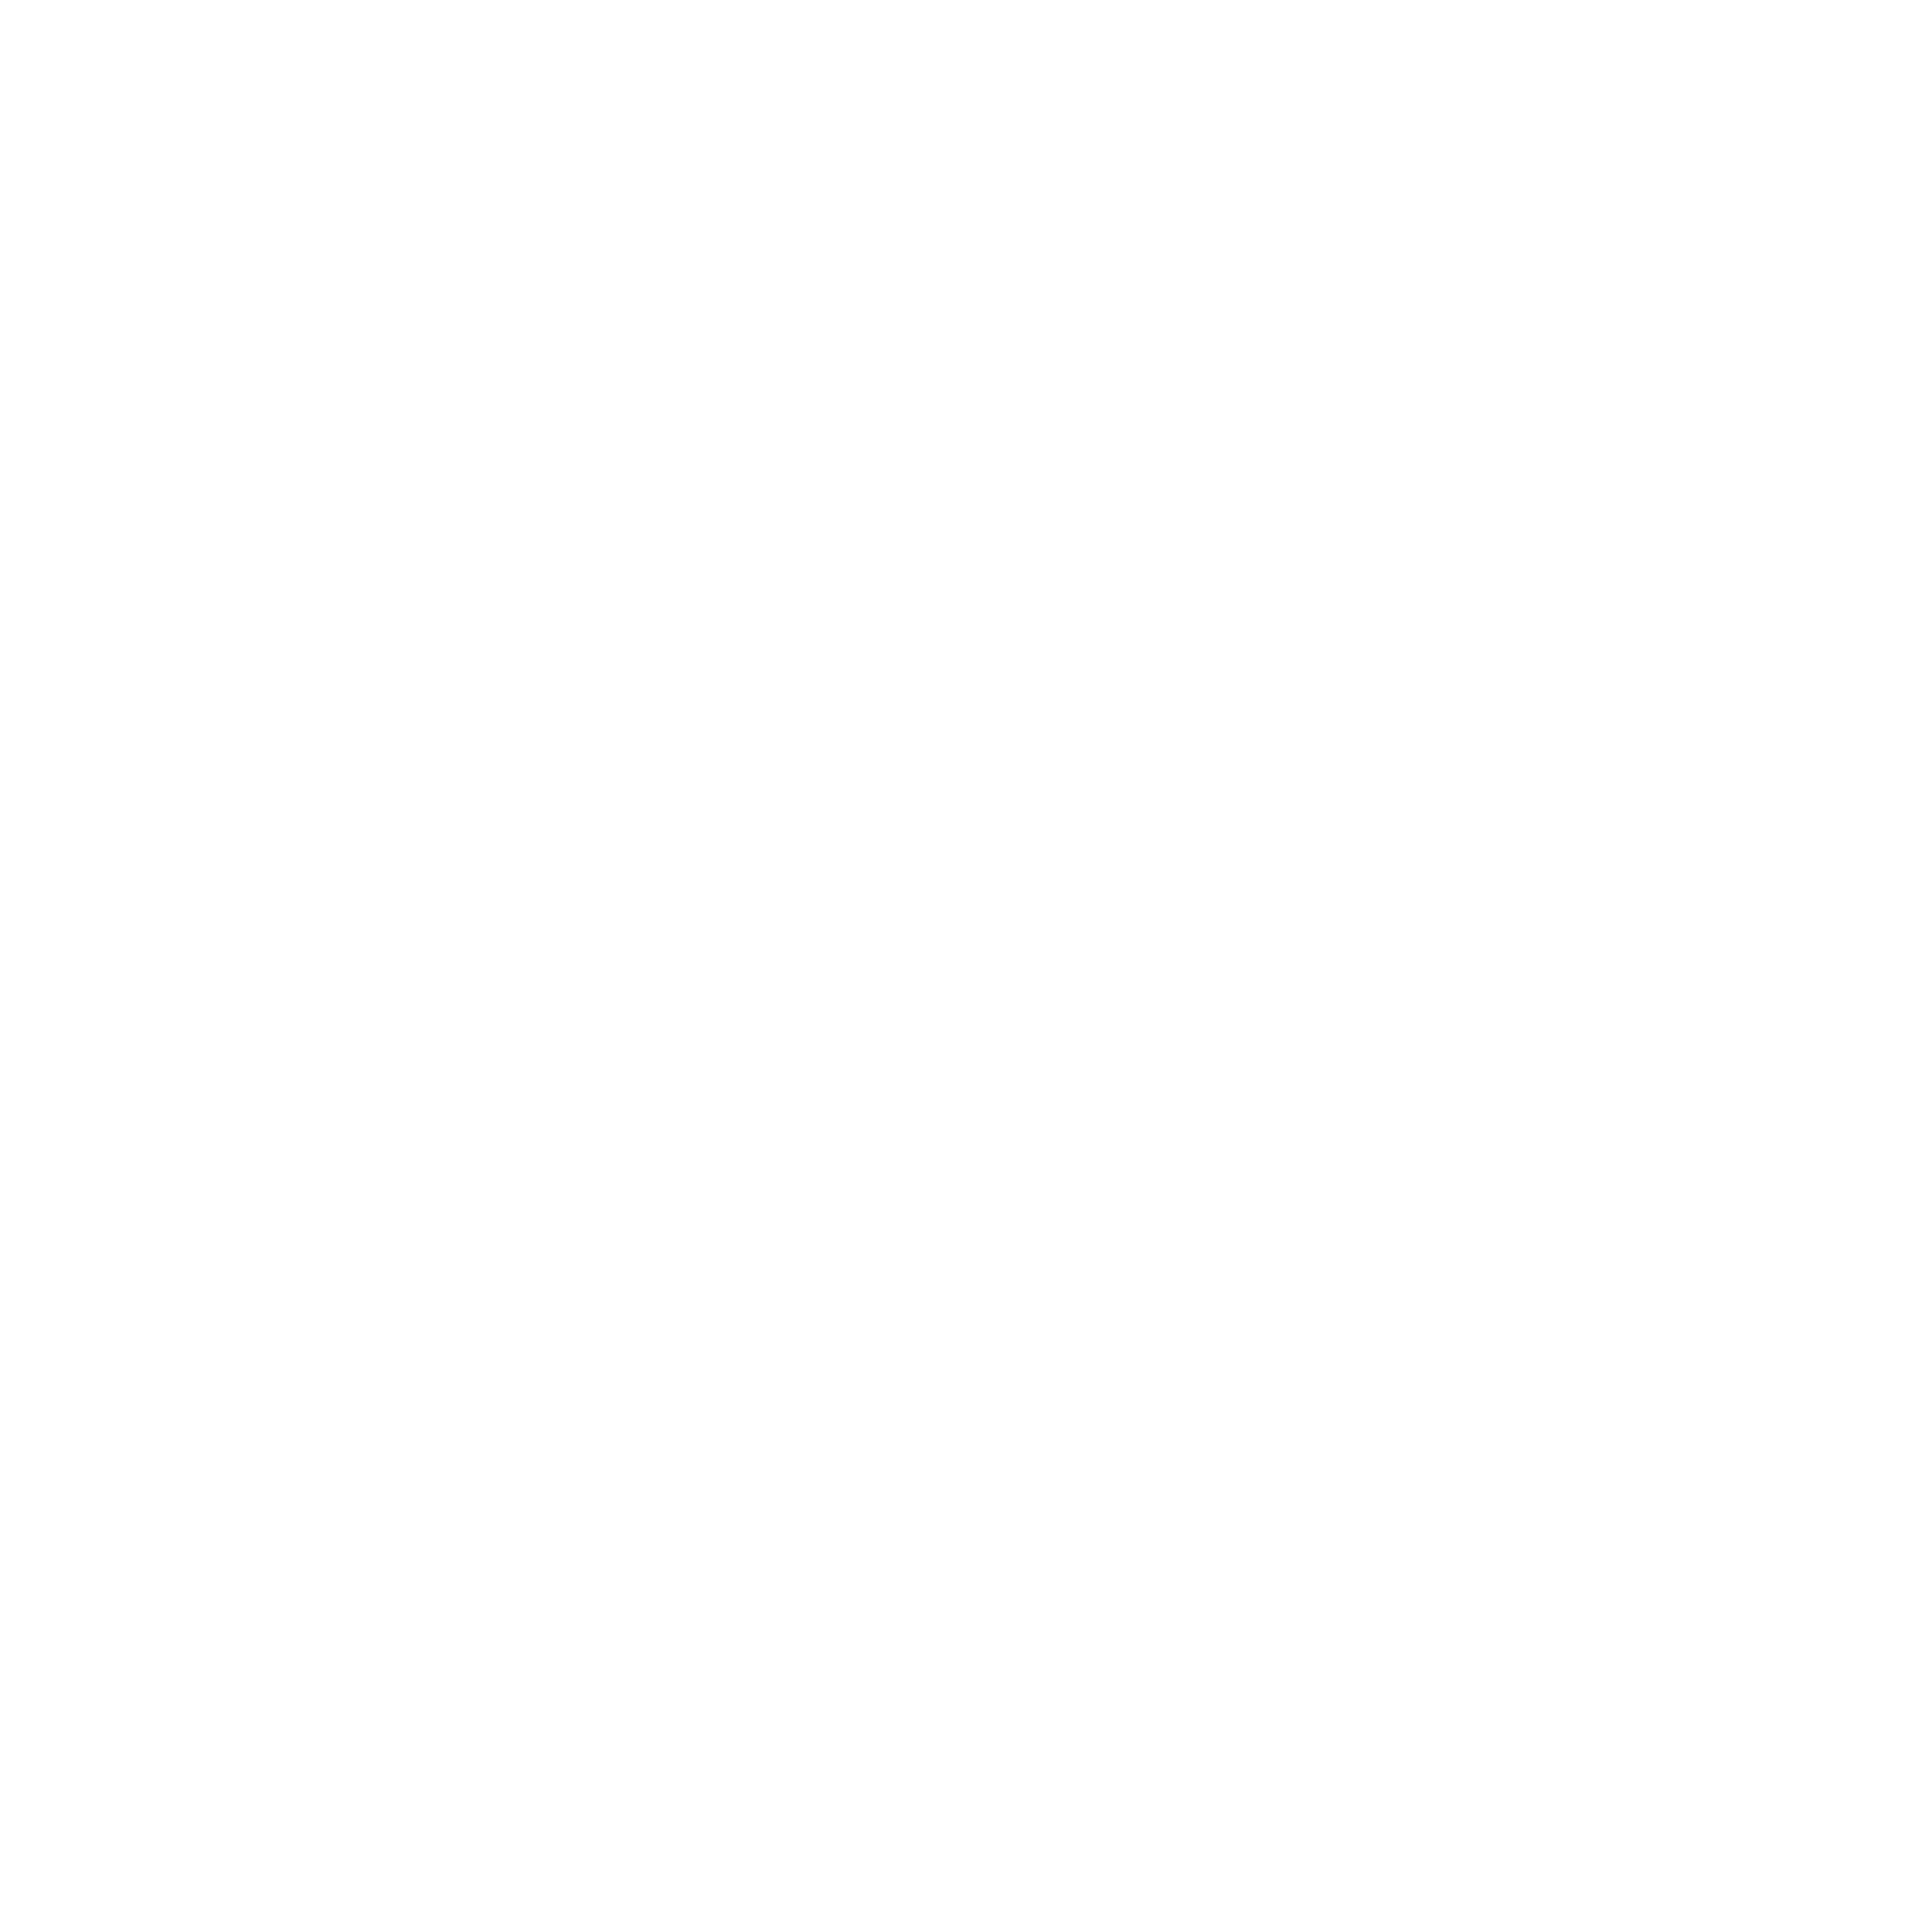 udgam-mhcrc-high-